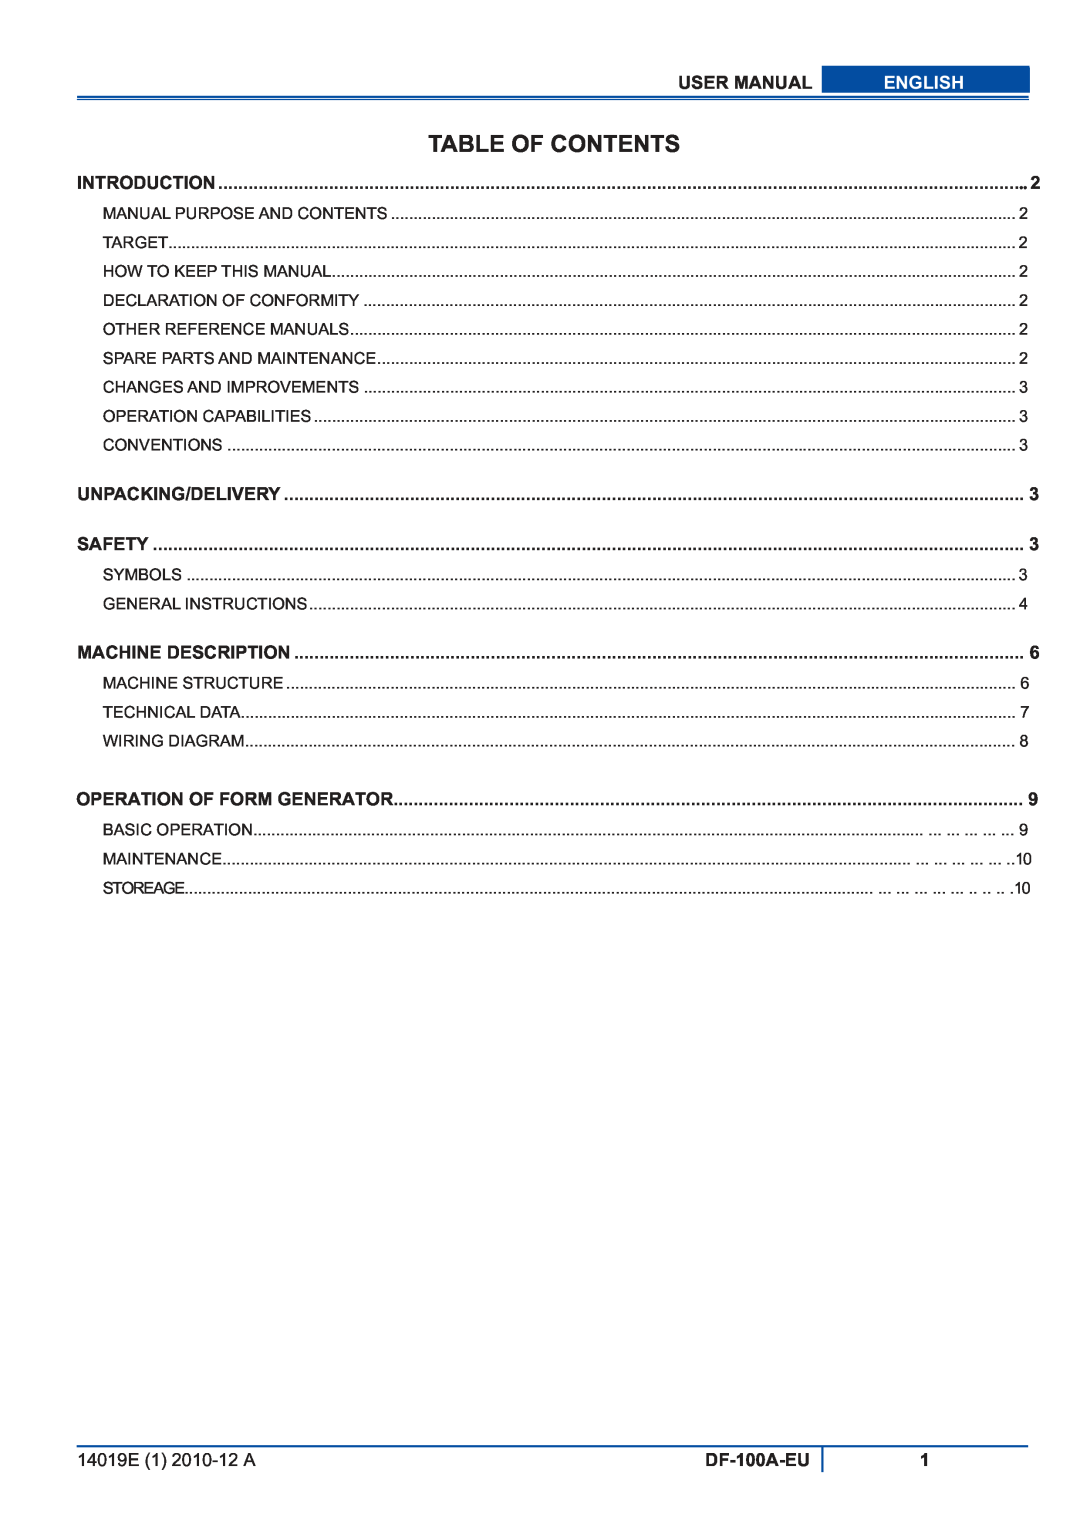 Viper DF-100A-EU user manual Table Of Contents, English 